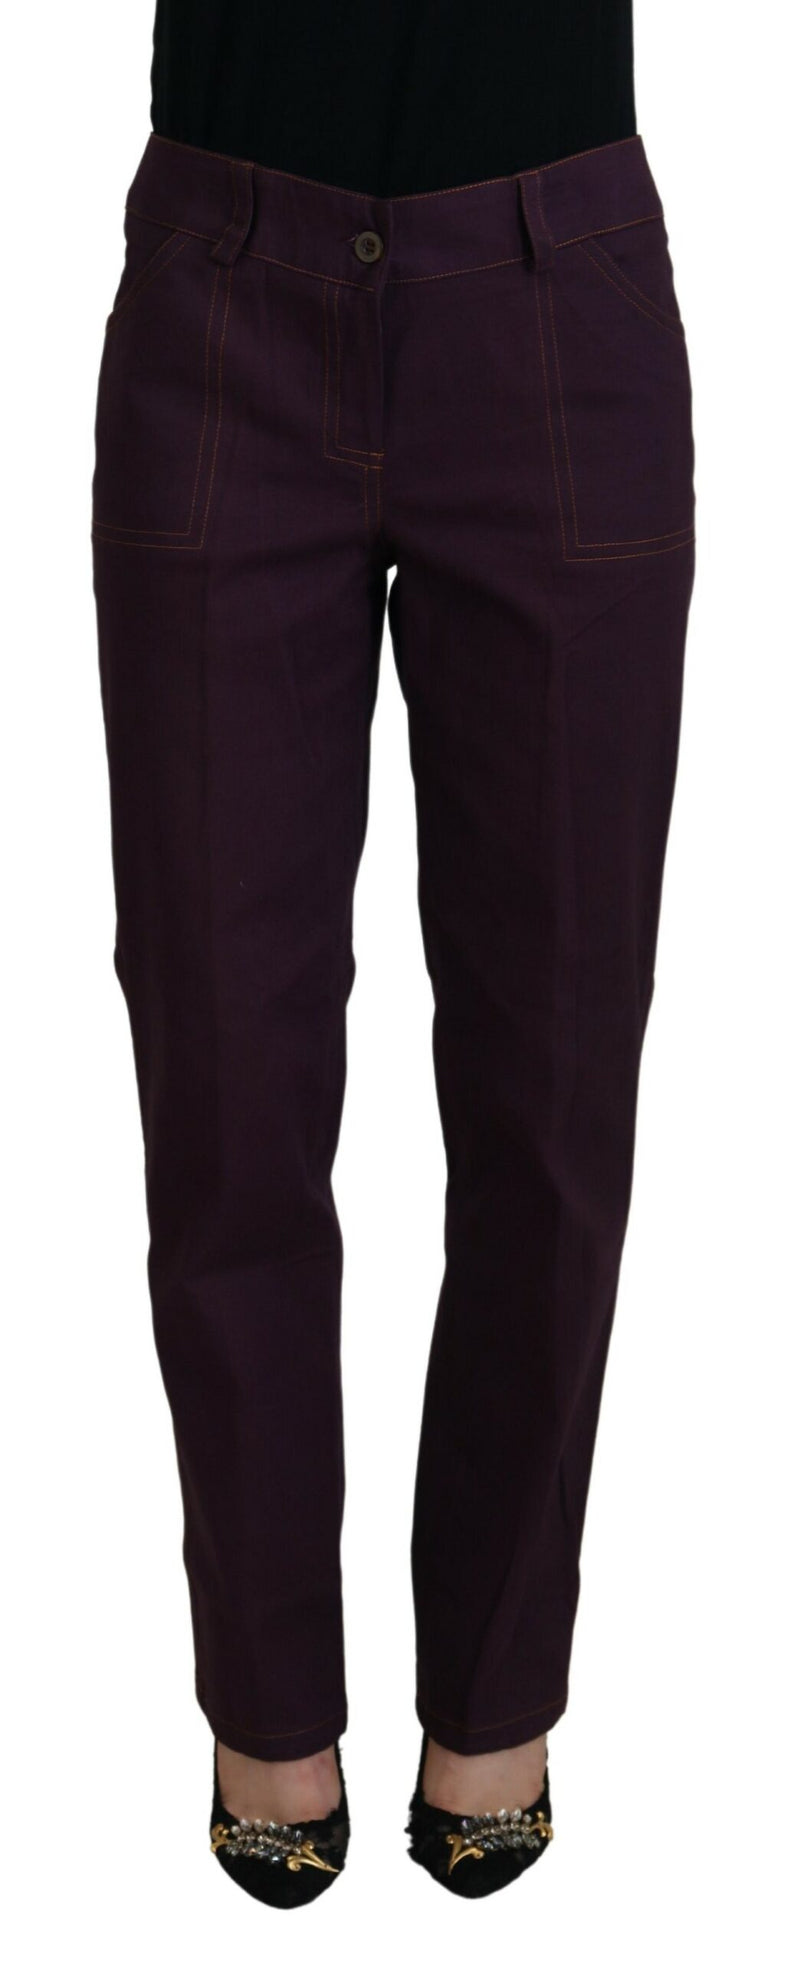 BENCIVENGA Elegant Tapered Purple Cotton Women's Pants